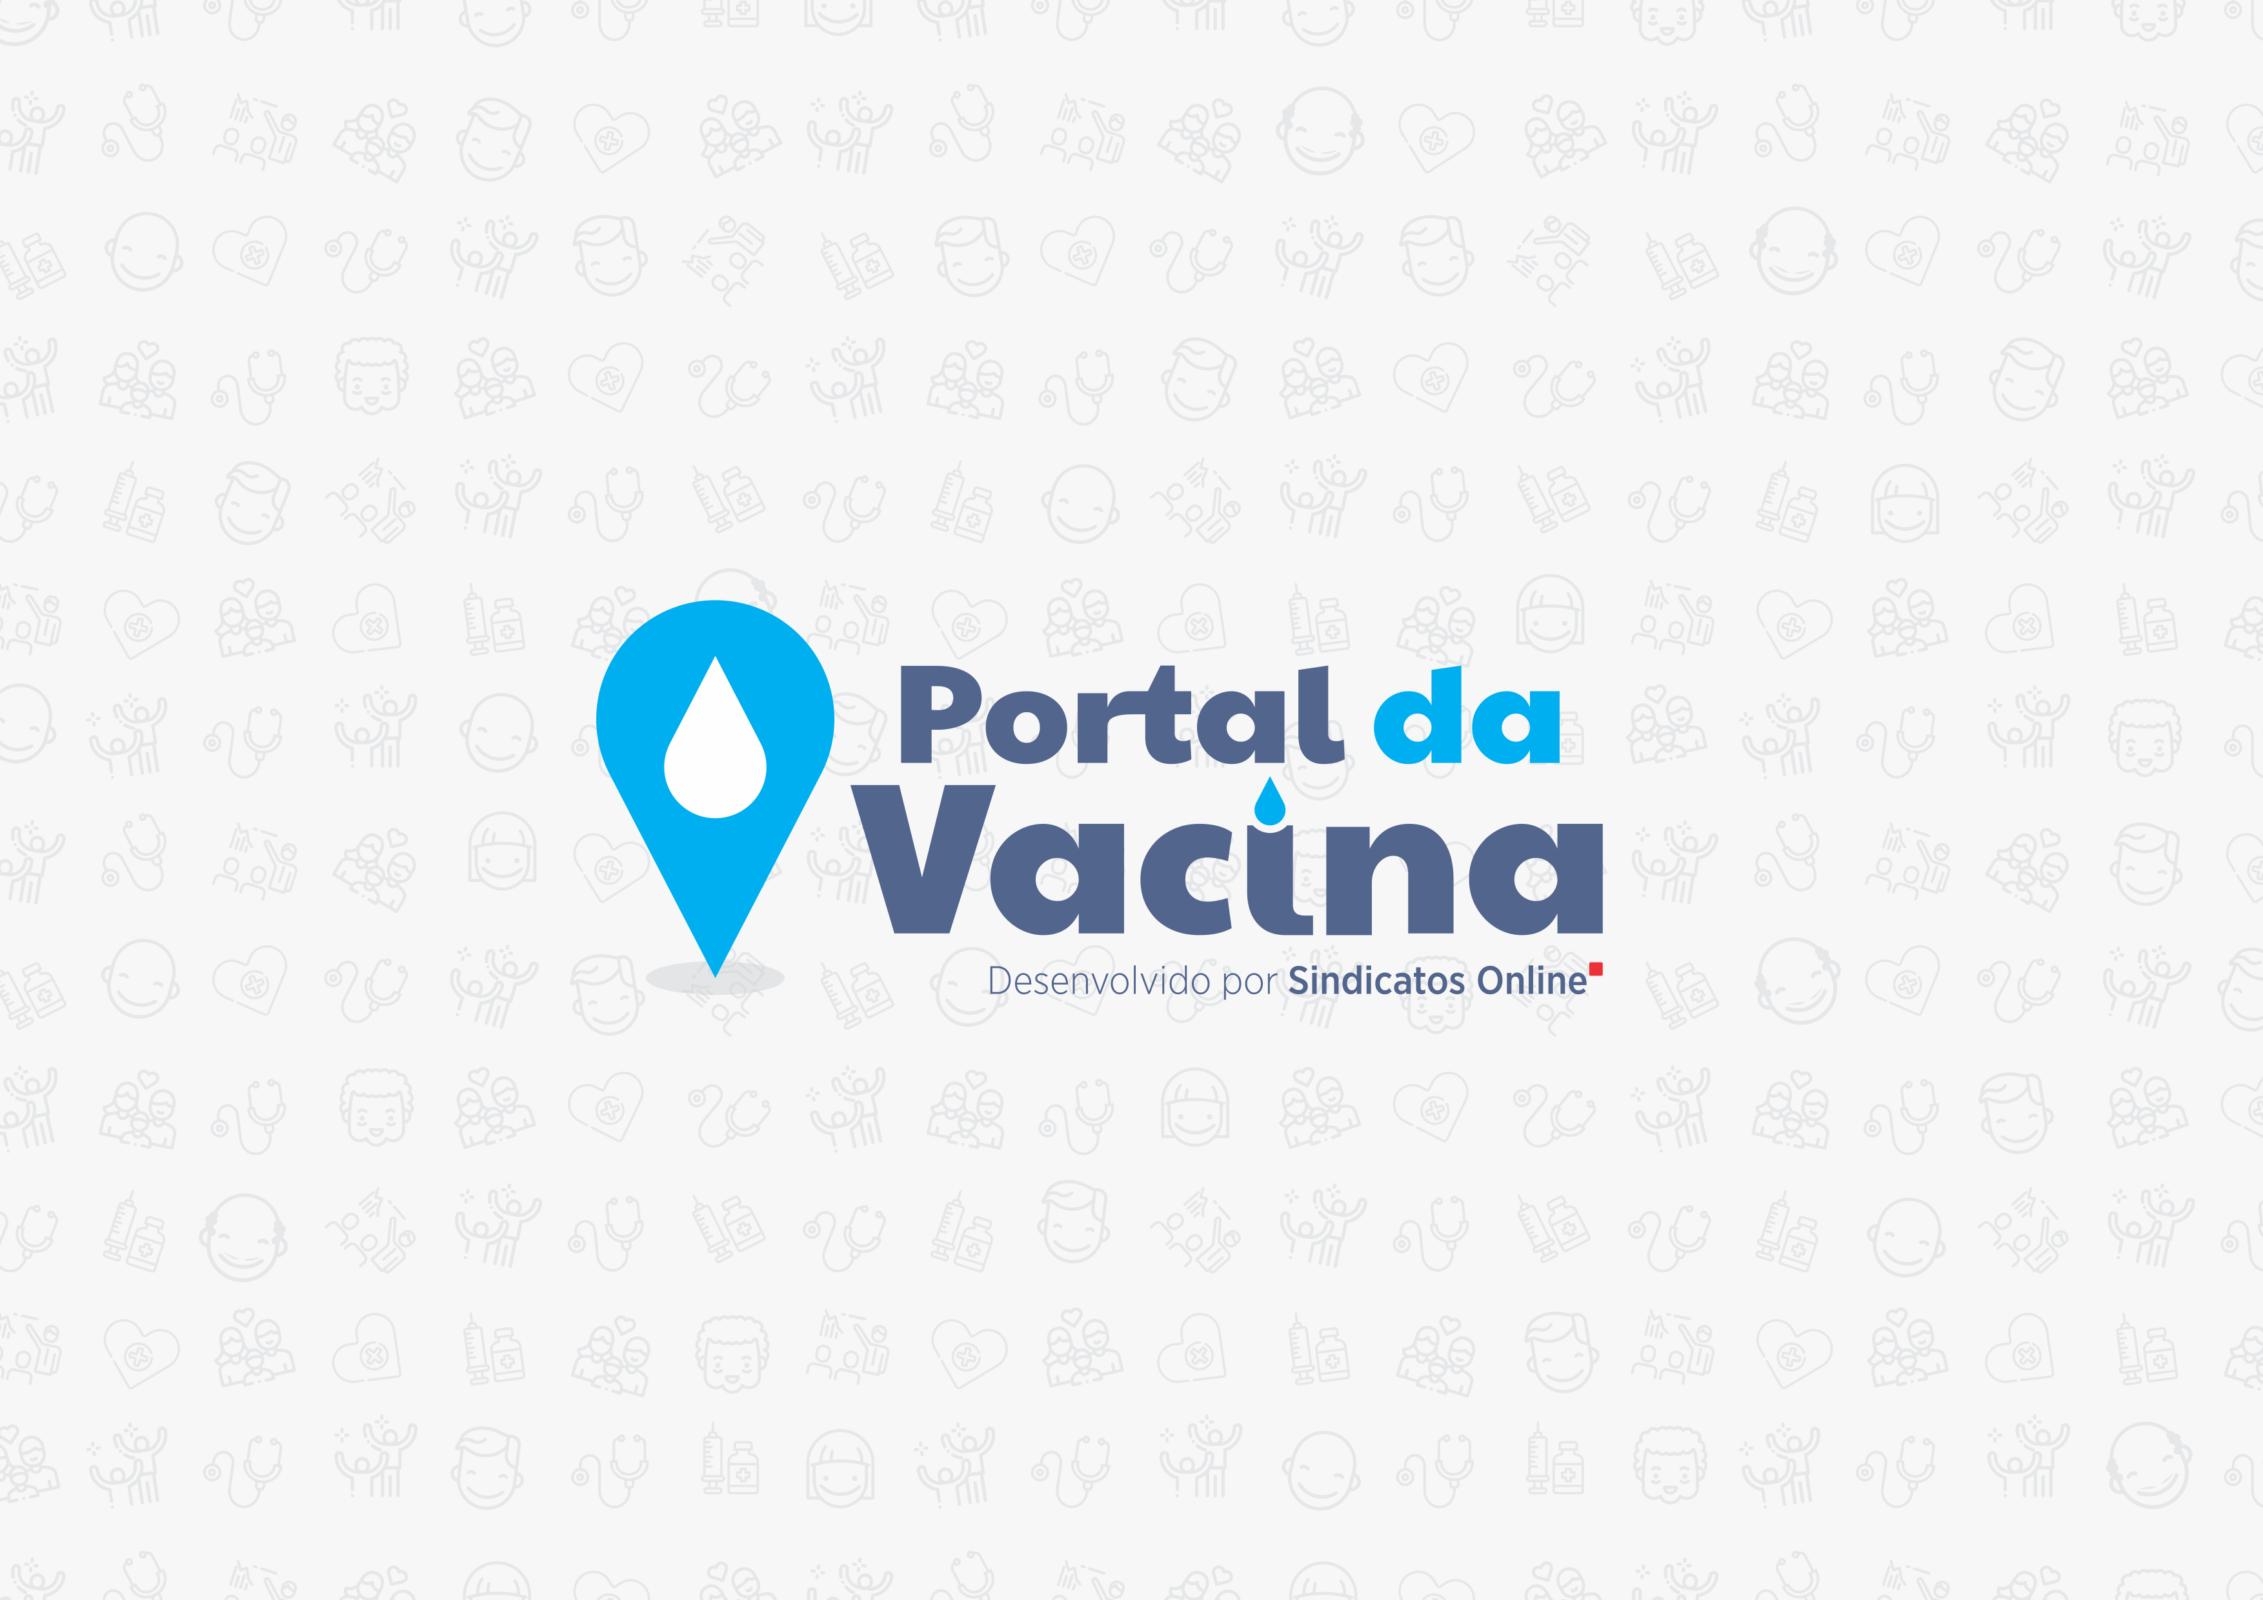 Entidades sindicais lançam Portal da Vacina pra informar população